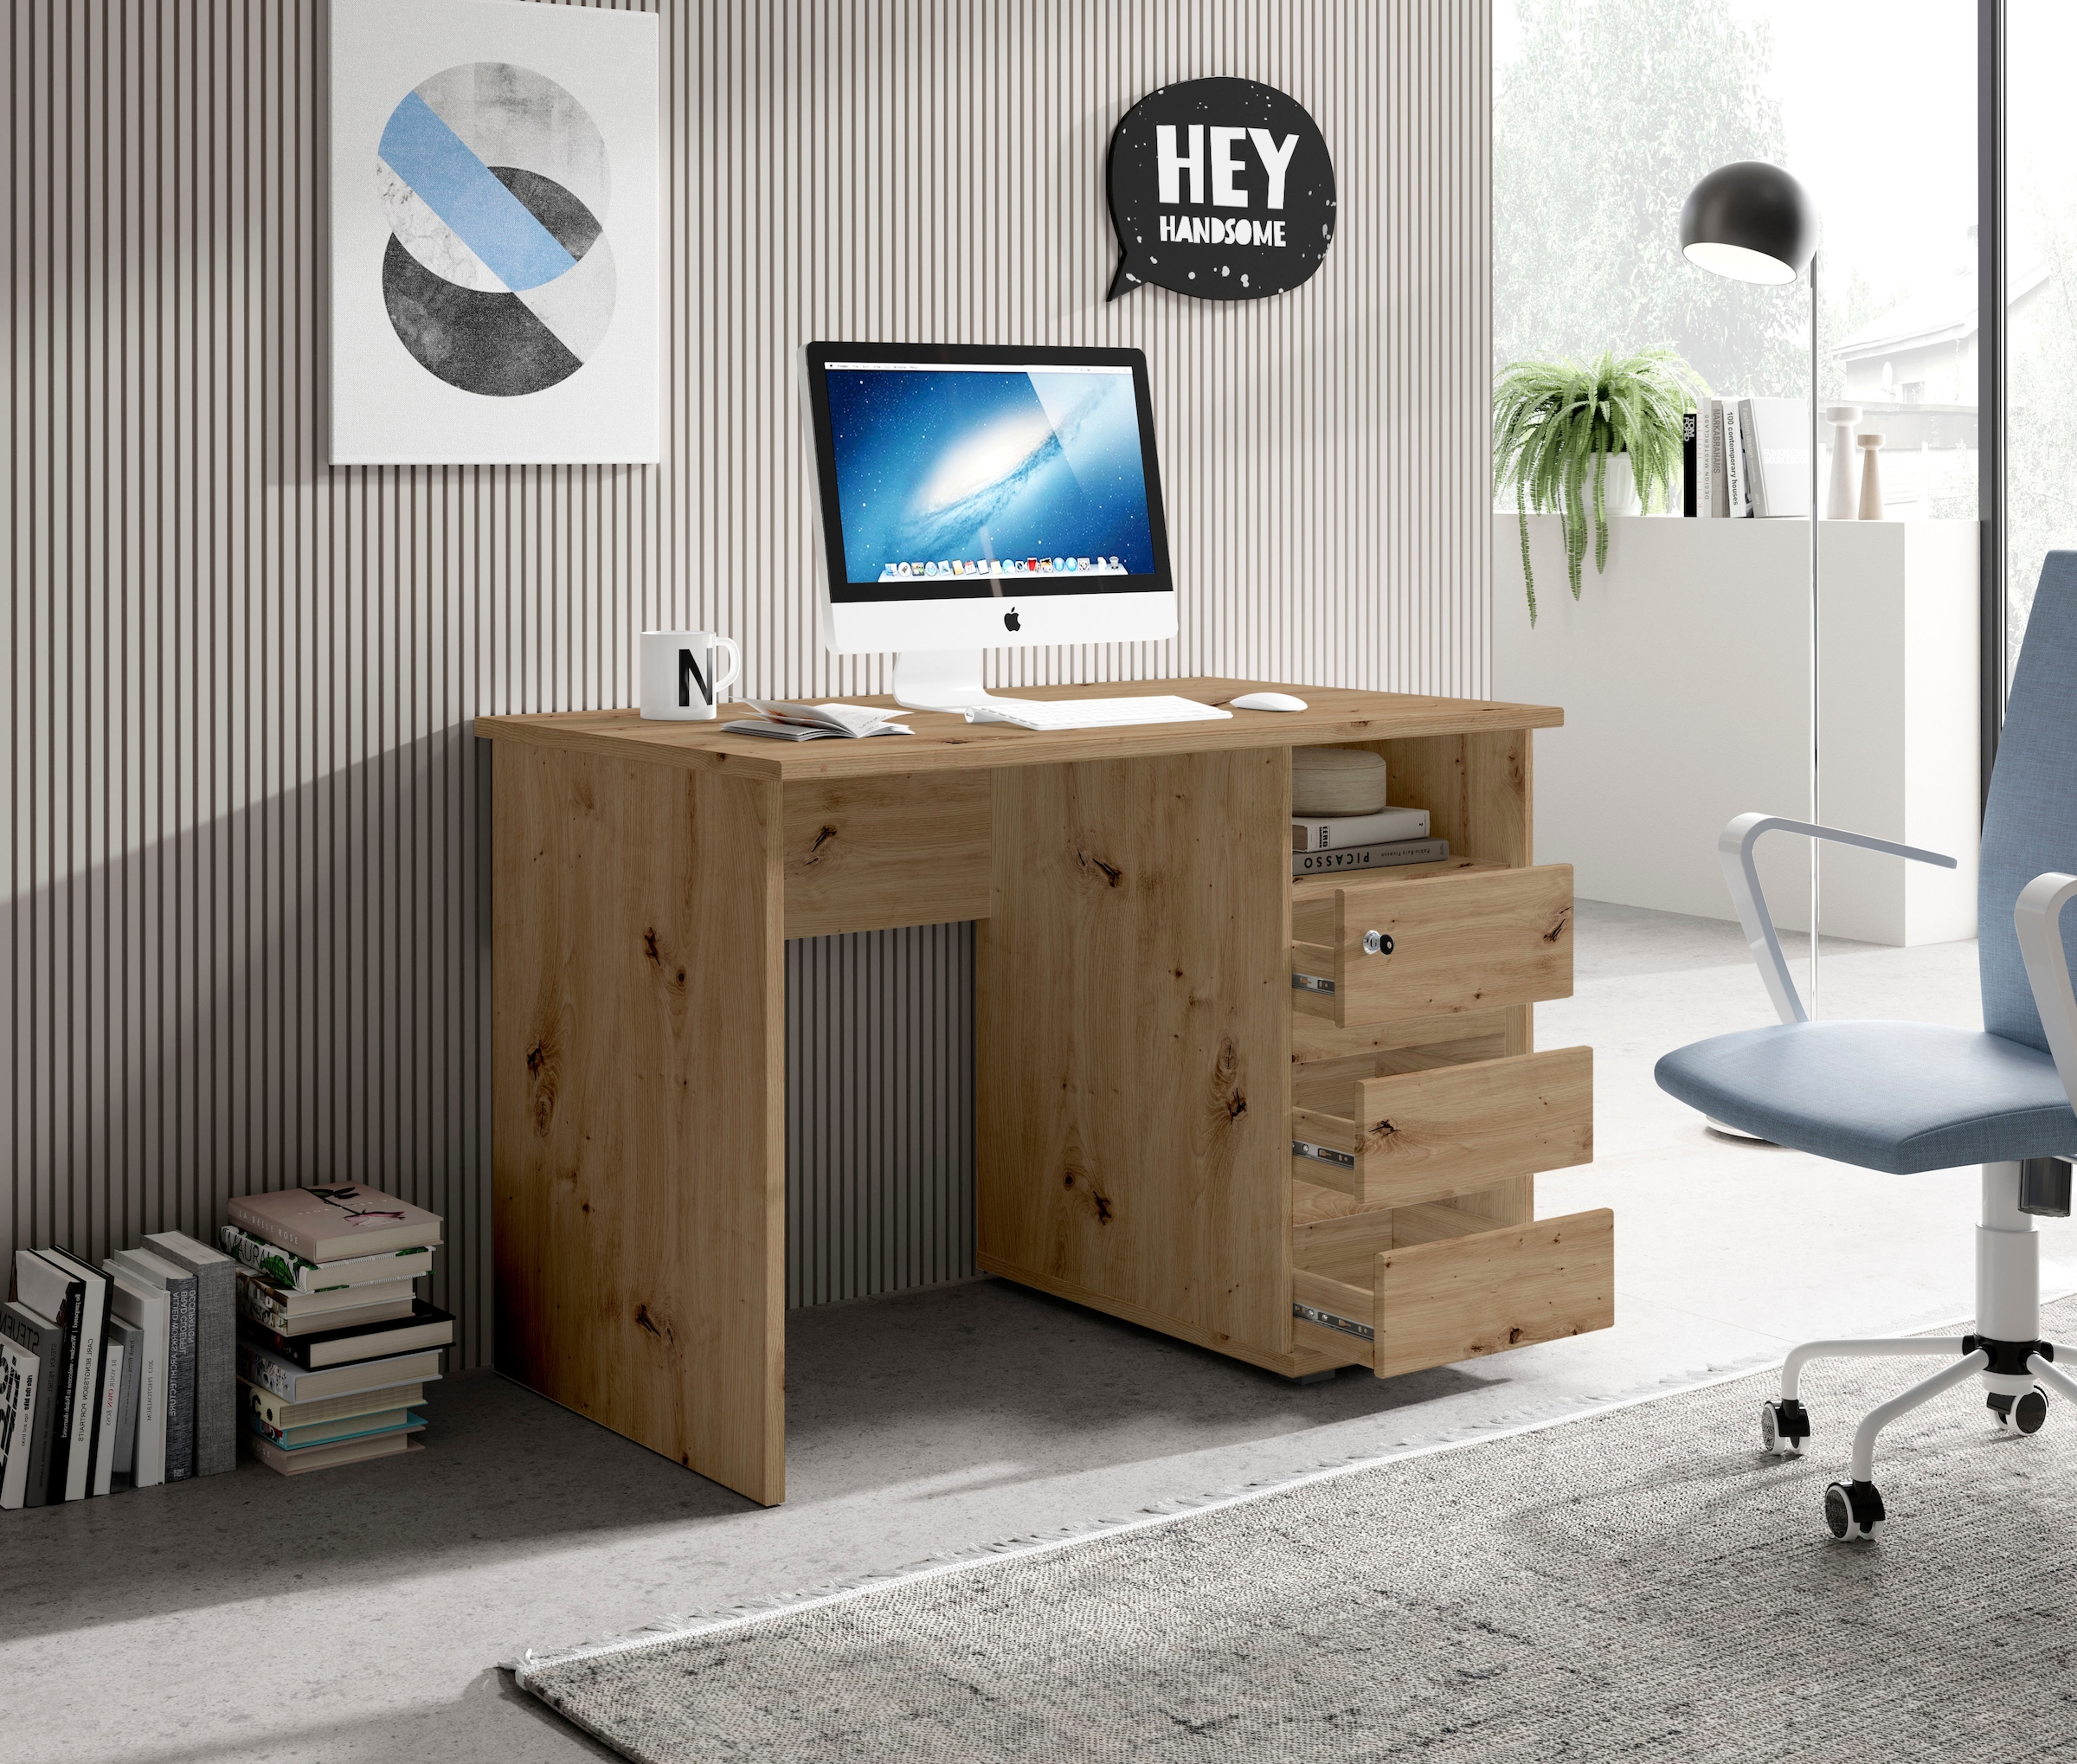 BEGA OFFICE Schreibtisch »Primus 1«, mit Schubkasten abschließbar in 3 Farbausführungen